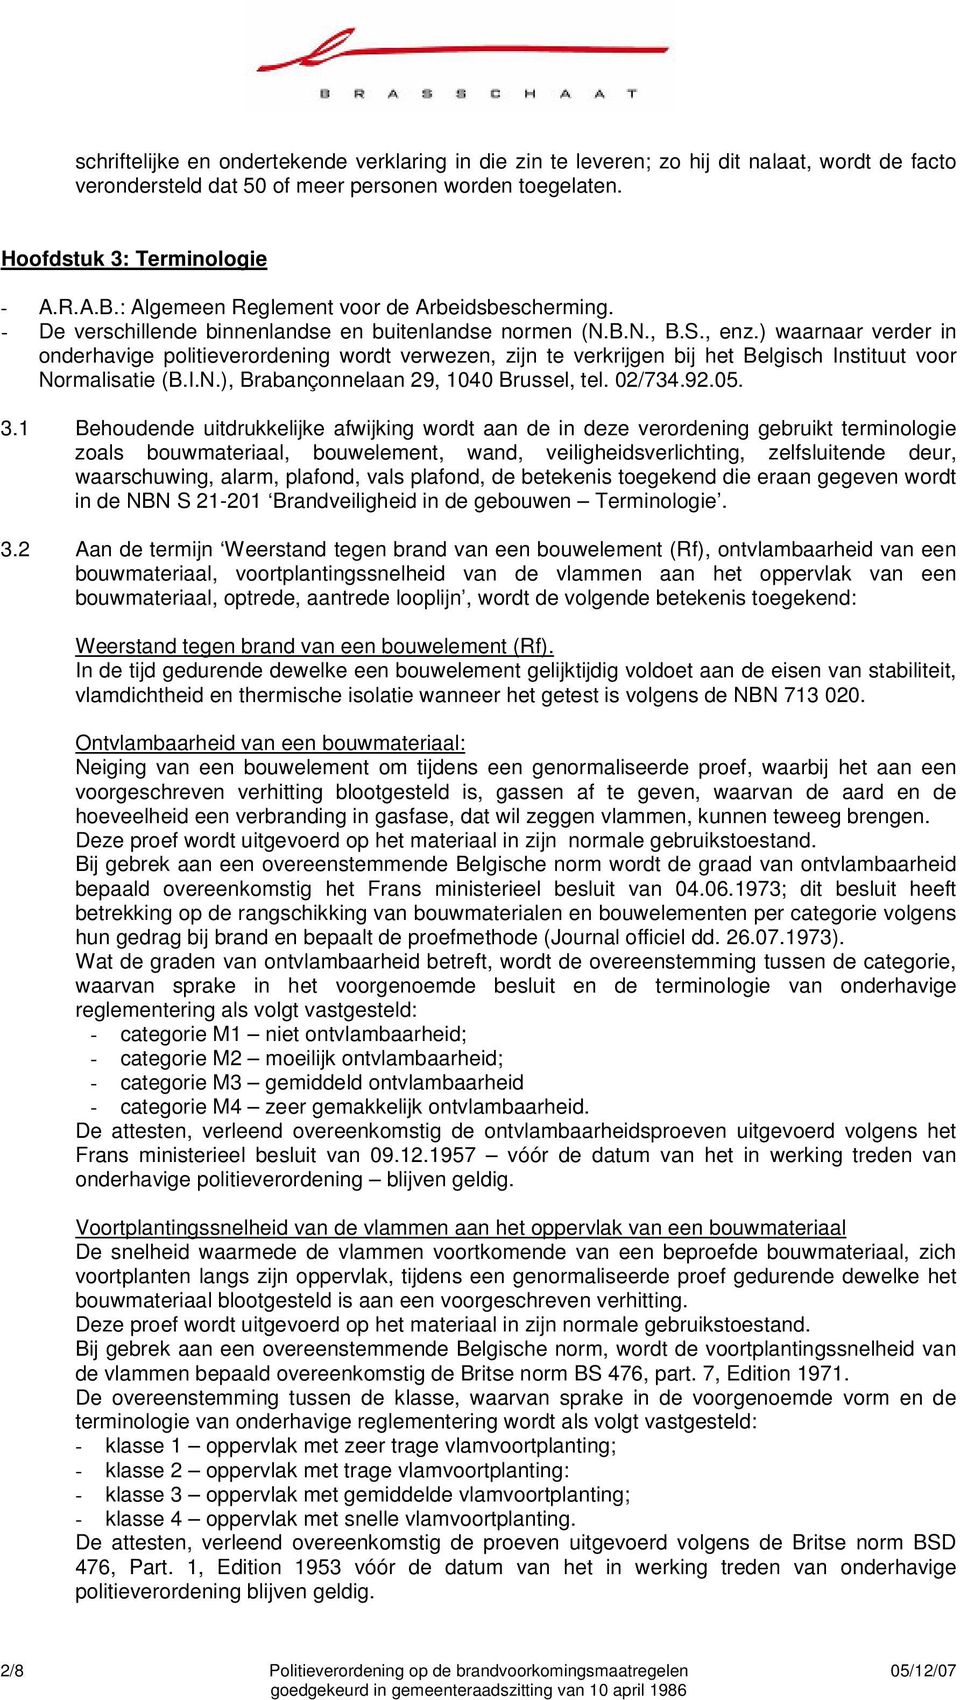 ) waarnaar verder in onderhavige politieverordening wordt verwezen, zijn te verkrijgen bij het Belgisch Instituut voor Normalisatie (B.I.N.), Brabançonnelaan 29, 1040 Brussel, tel. 02/734.92.05. 3.